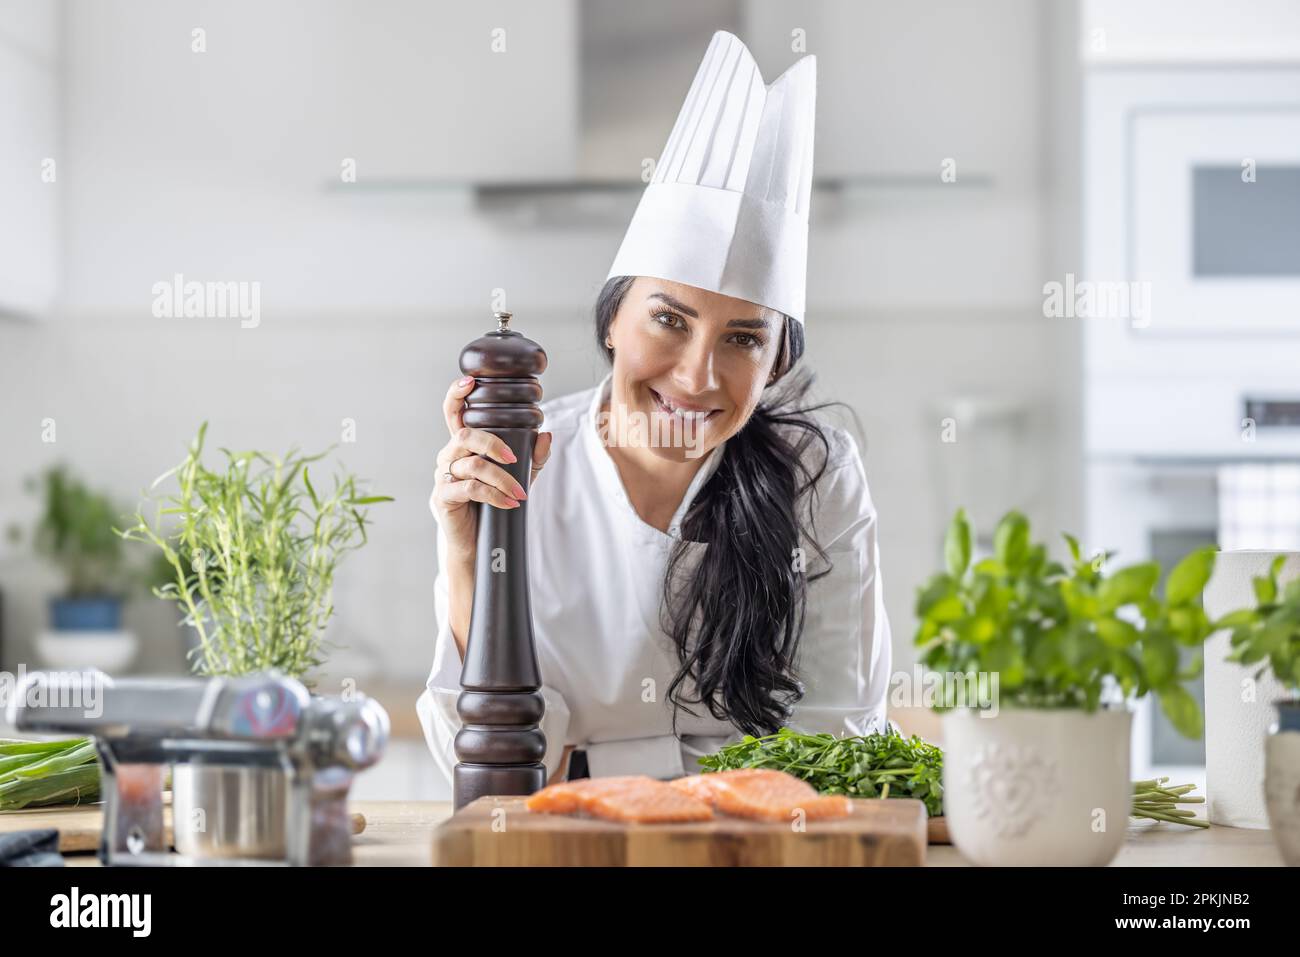 La chef femenina de toque blanche, sombrero blanco y uniforme sostiene un molinillo de pimienta durante la preparación de comidas de pescado y verduras. Foto de stock